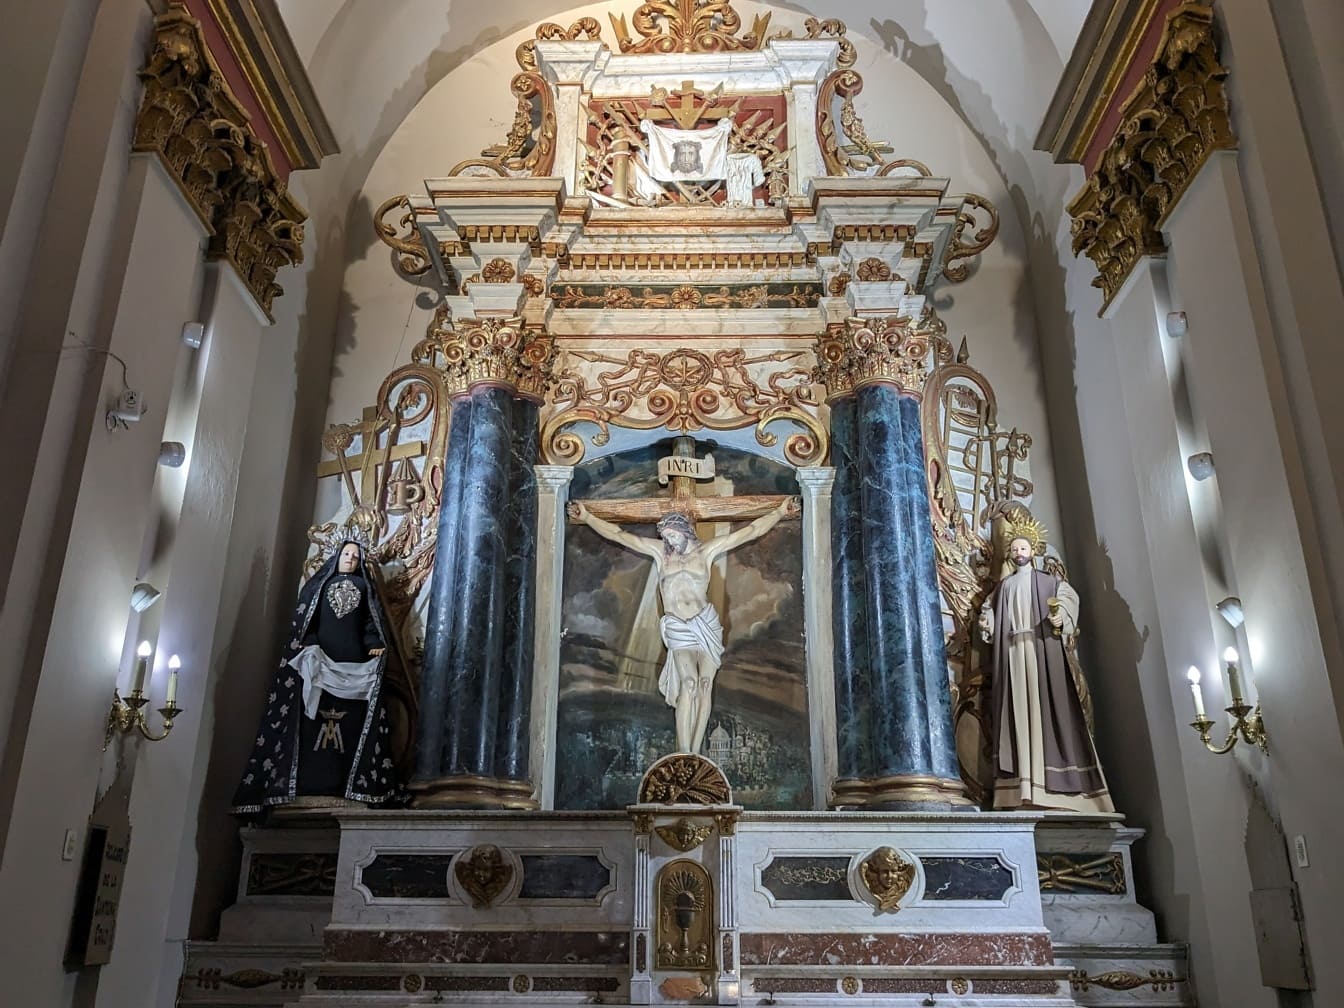 Sierlijk altaar met standbeeld van een Jezus Christus op een kruis dat opstanding in Zuidamerikaanse katholieke kerk uitbeeldt